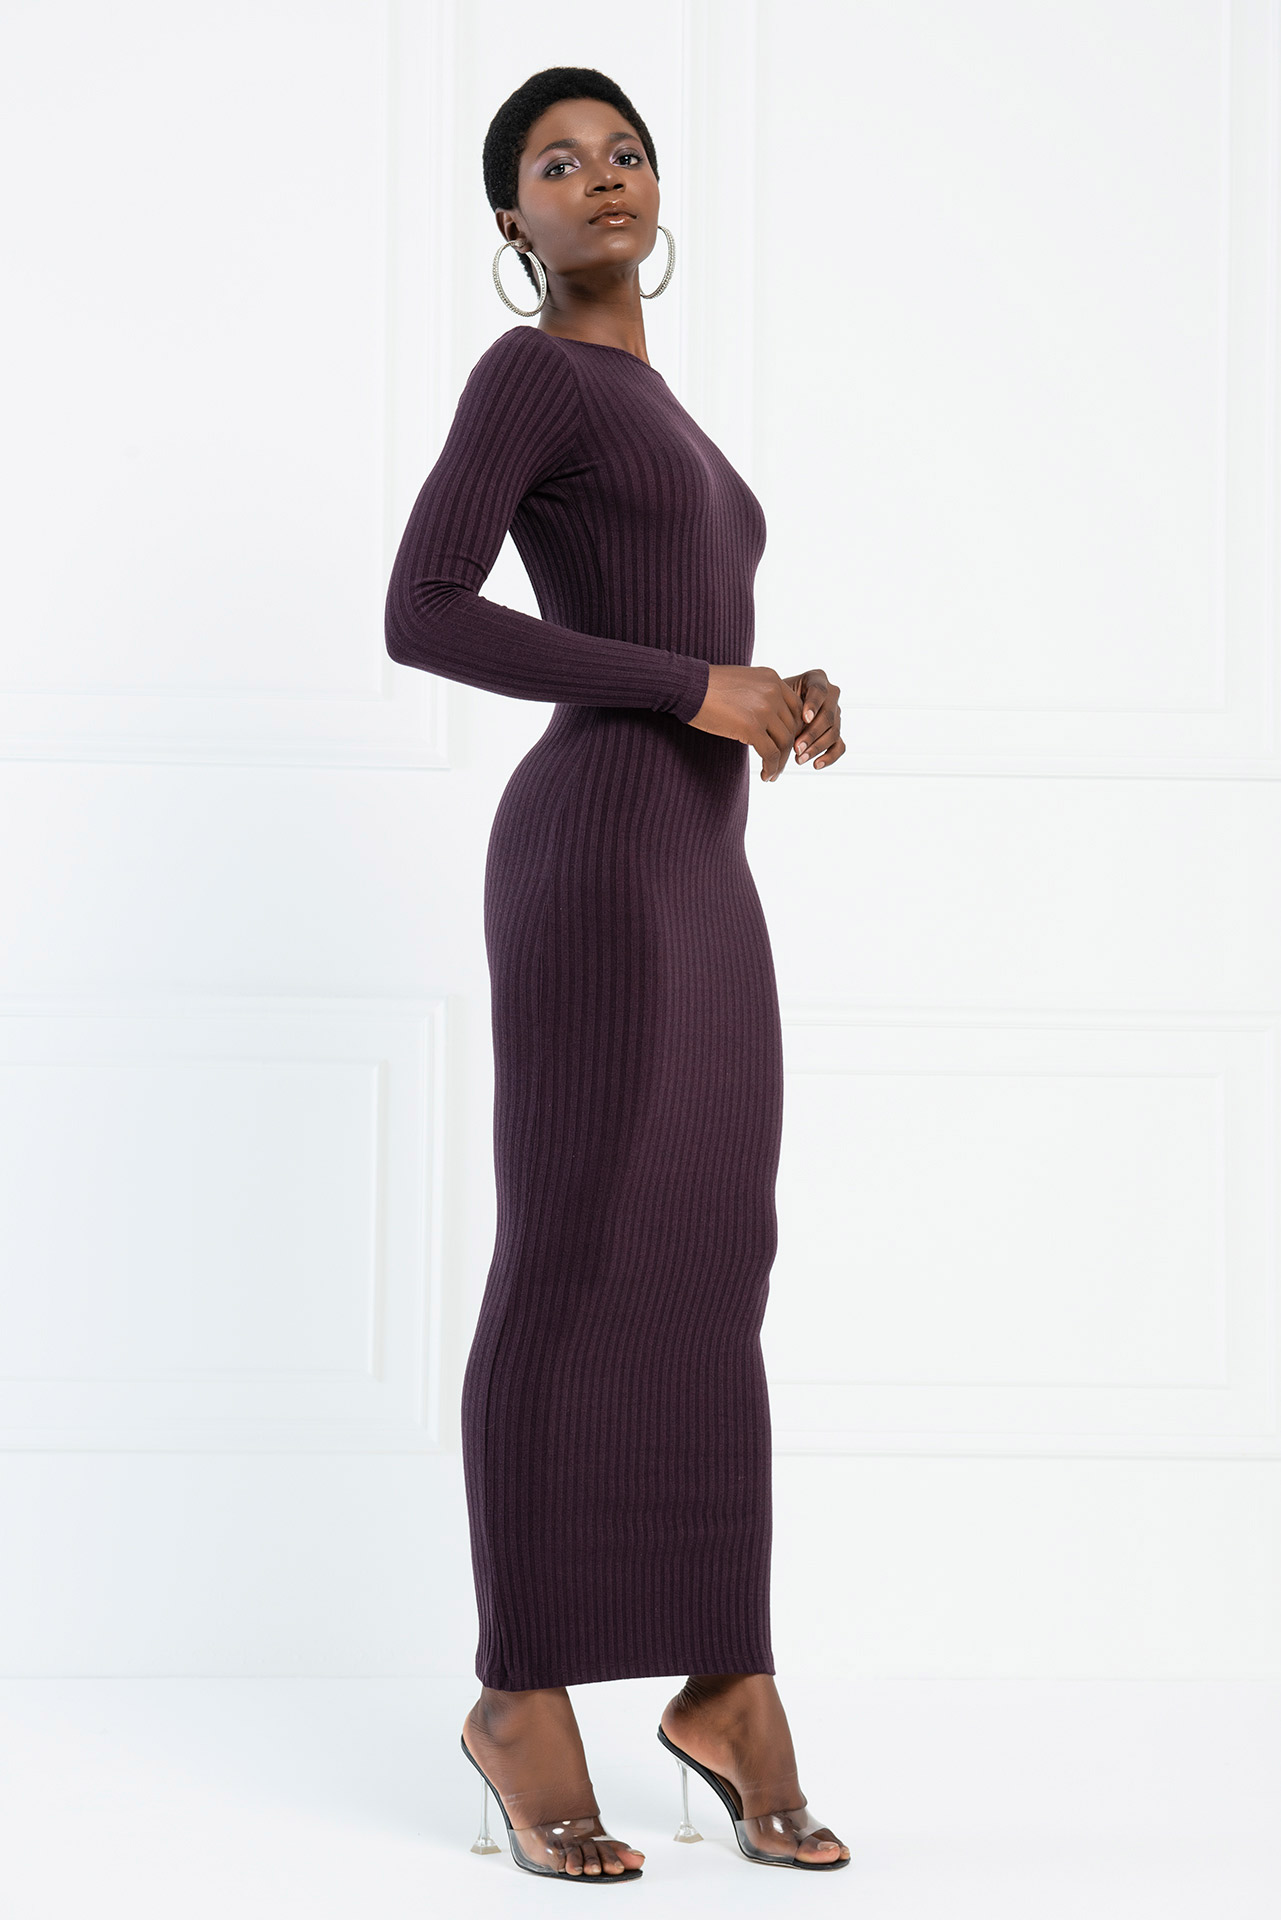 Wholesale Backless Off Shoulder Dark Purple Dress